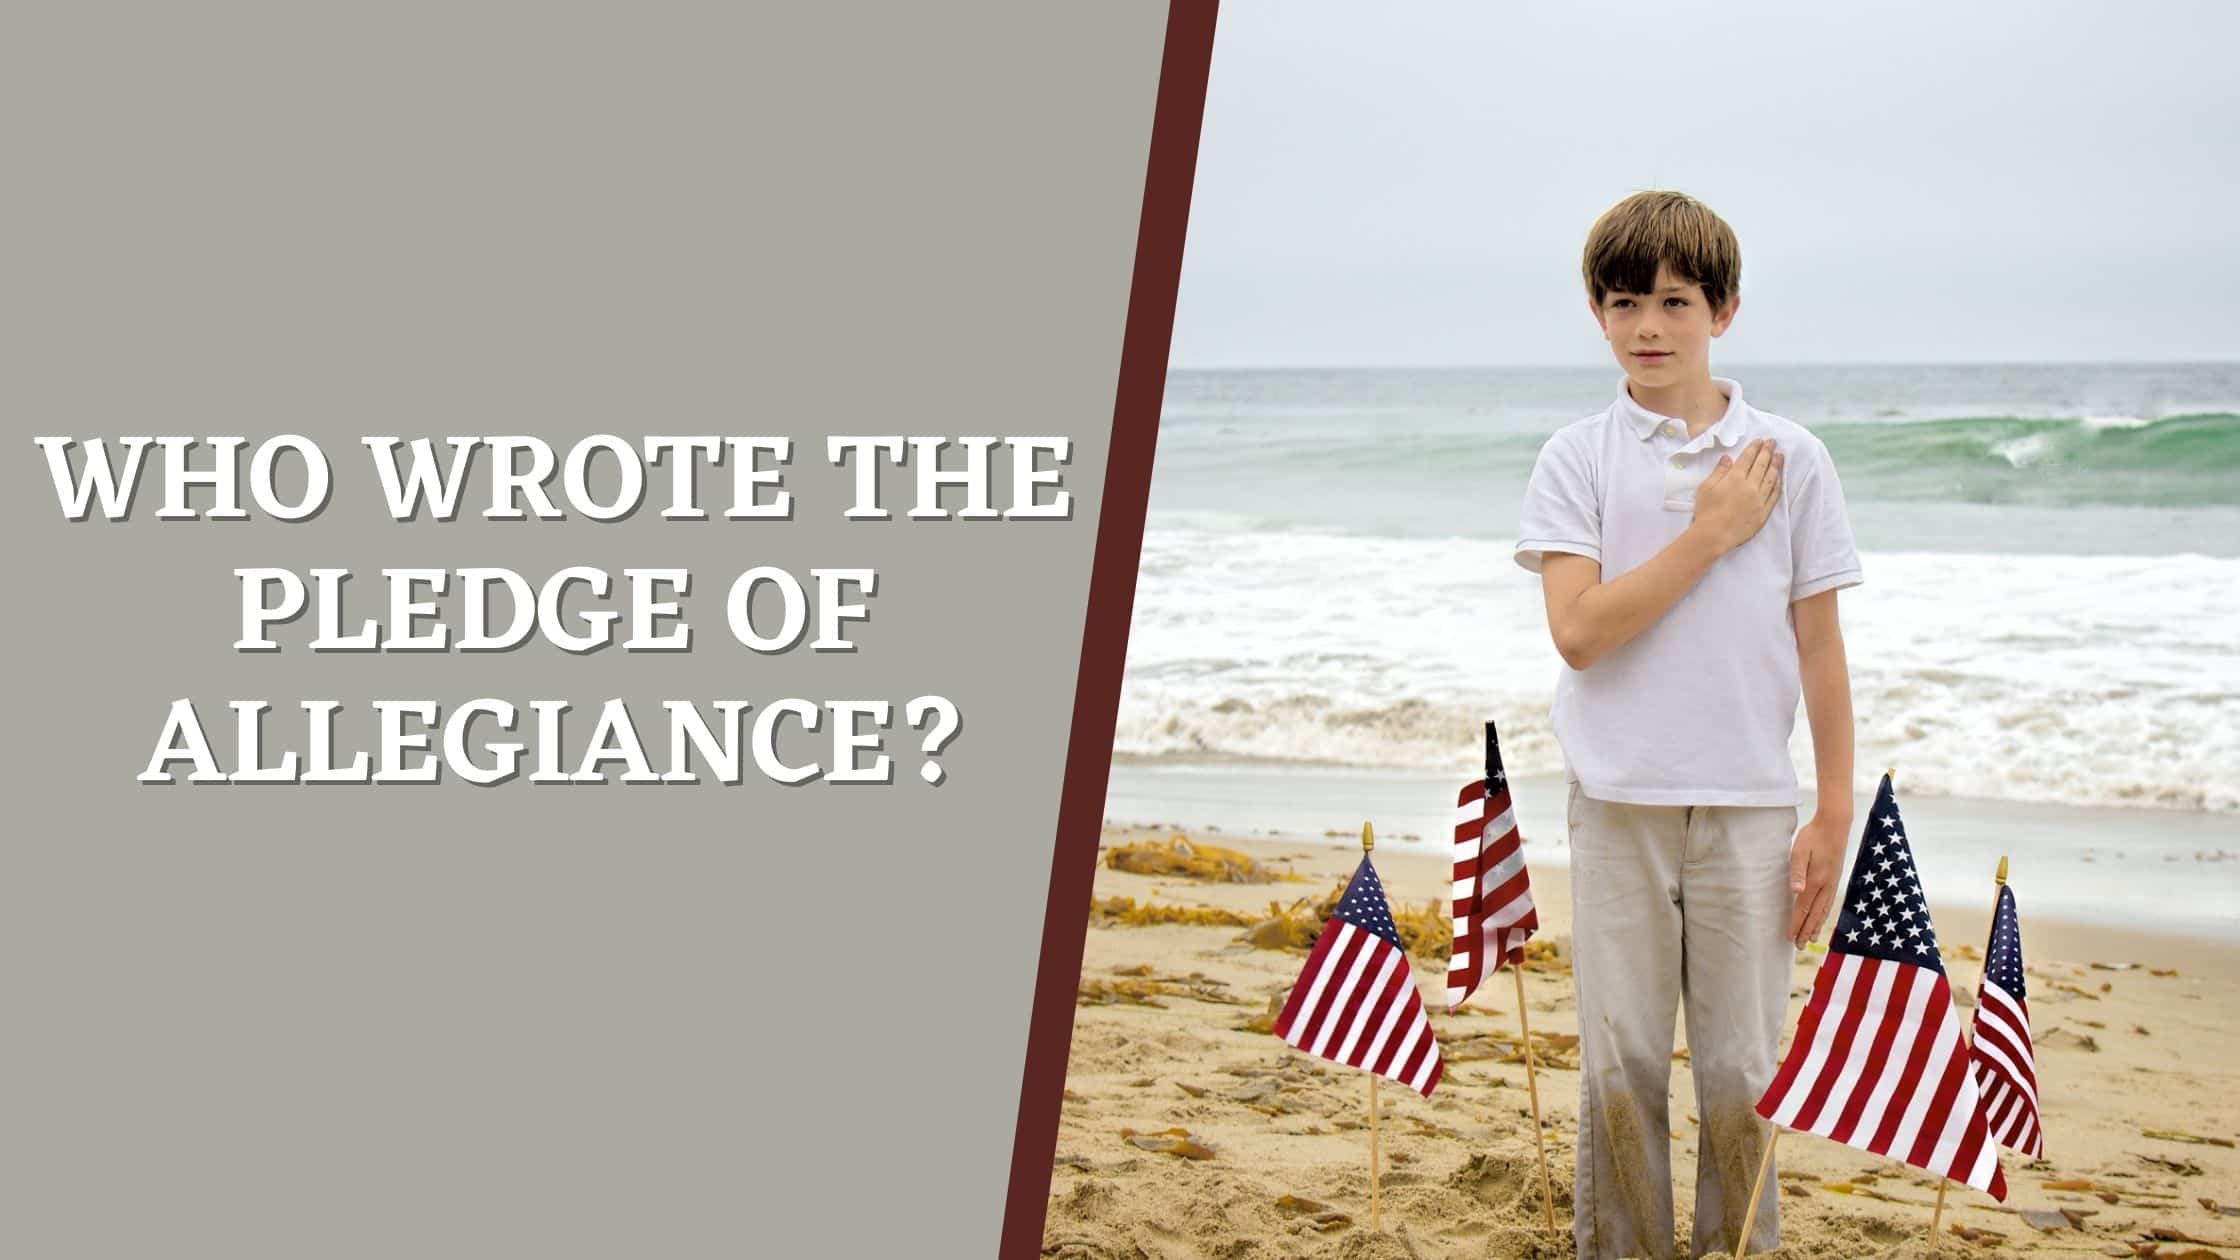 Boy making Pledge of Allegiance